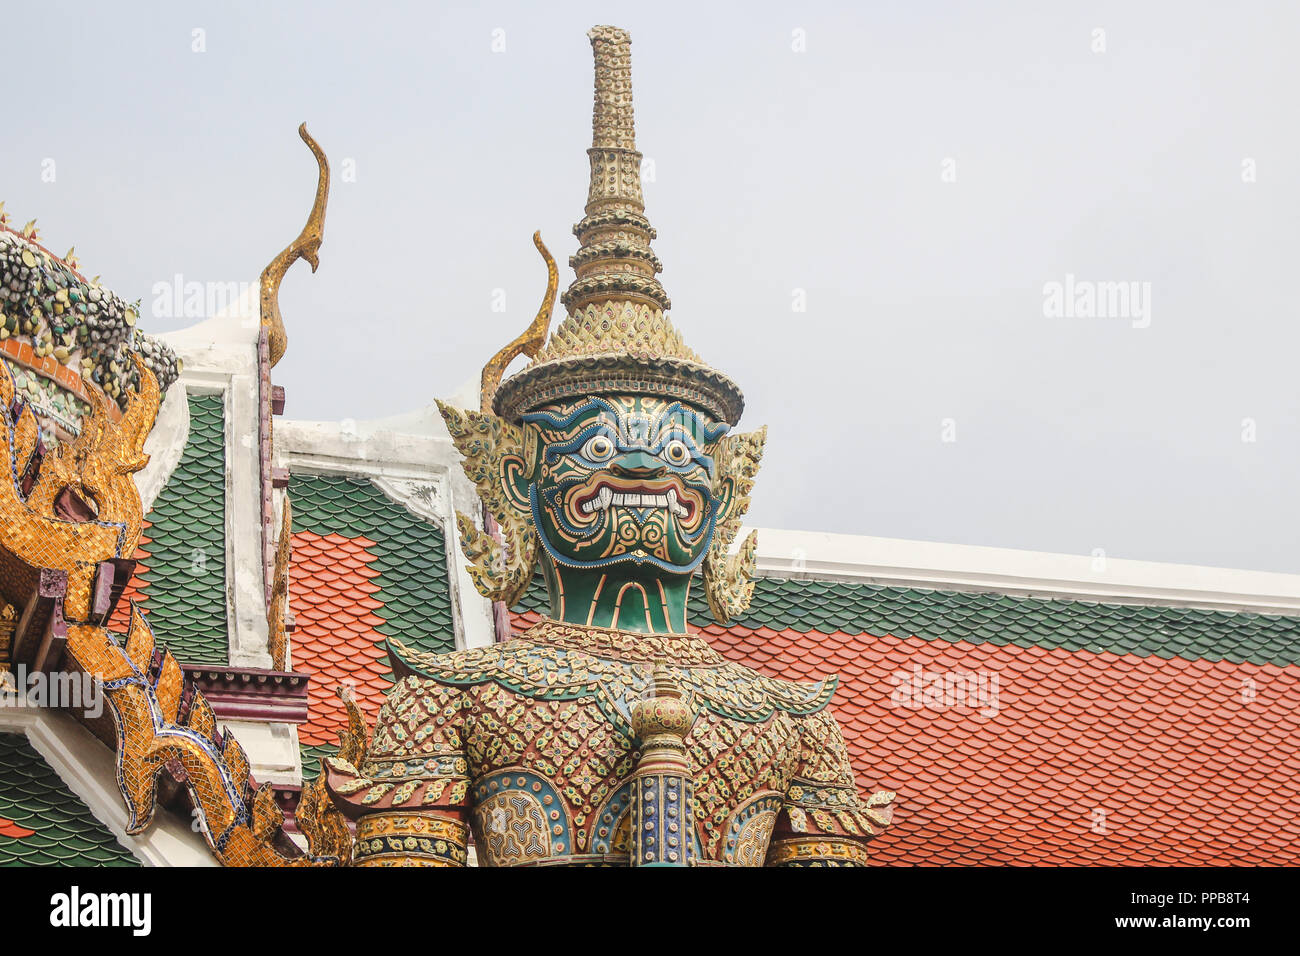 Démon géant détaillé guardian statue, connue comme Thotsakhirithon, au Wat Phra Kaew temple. Bangkok, Thaïlande. Banque D'Images